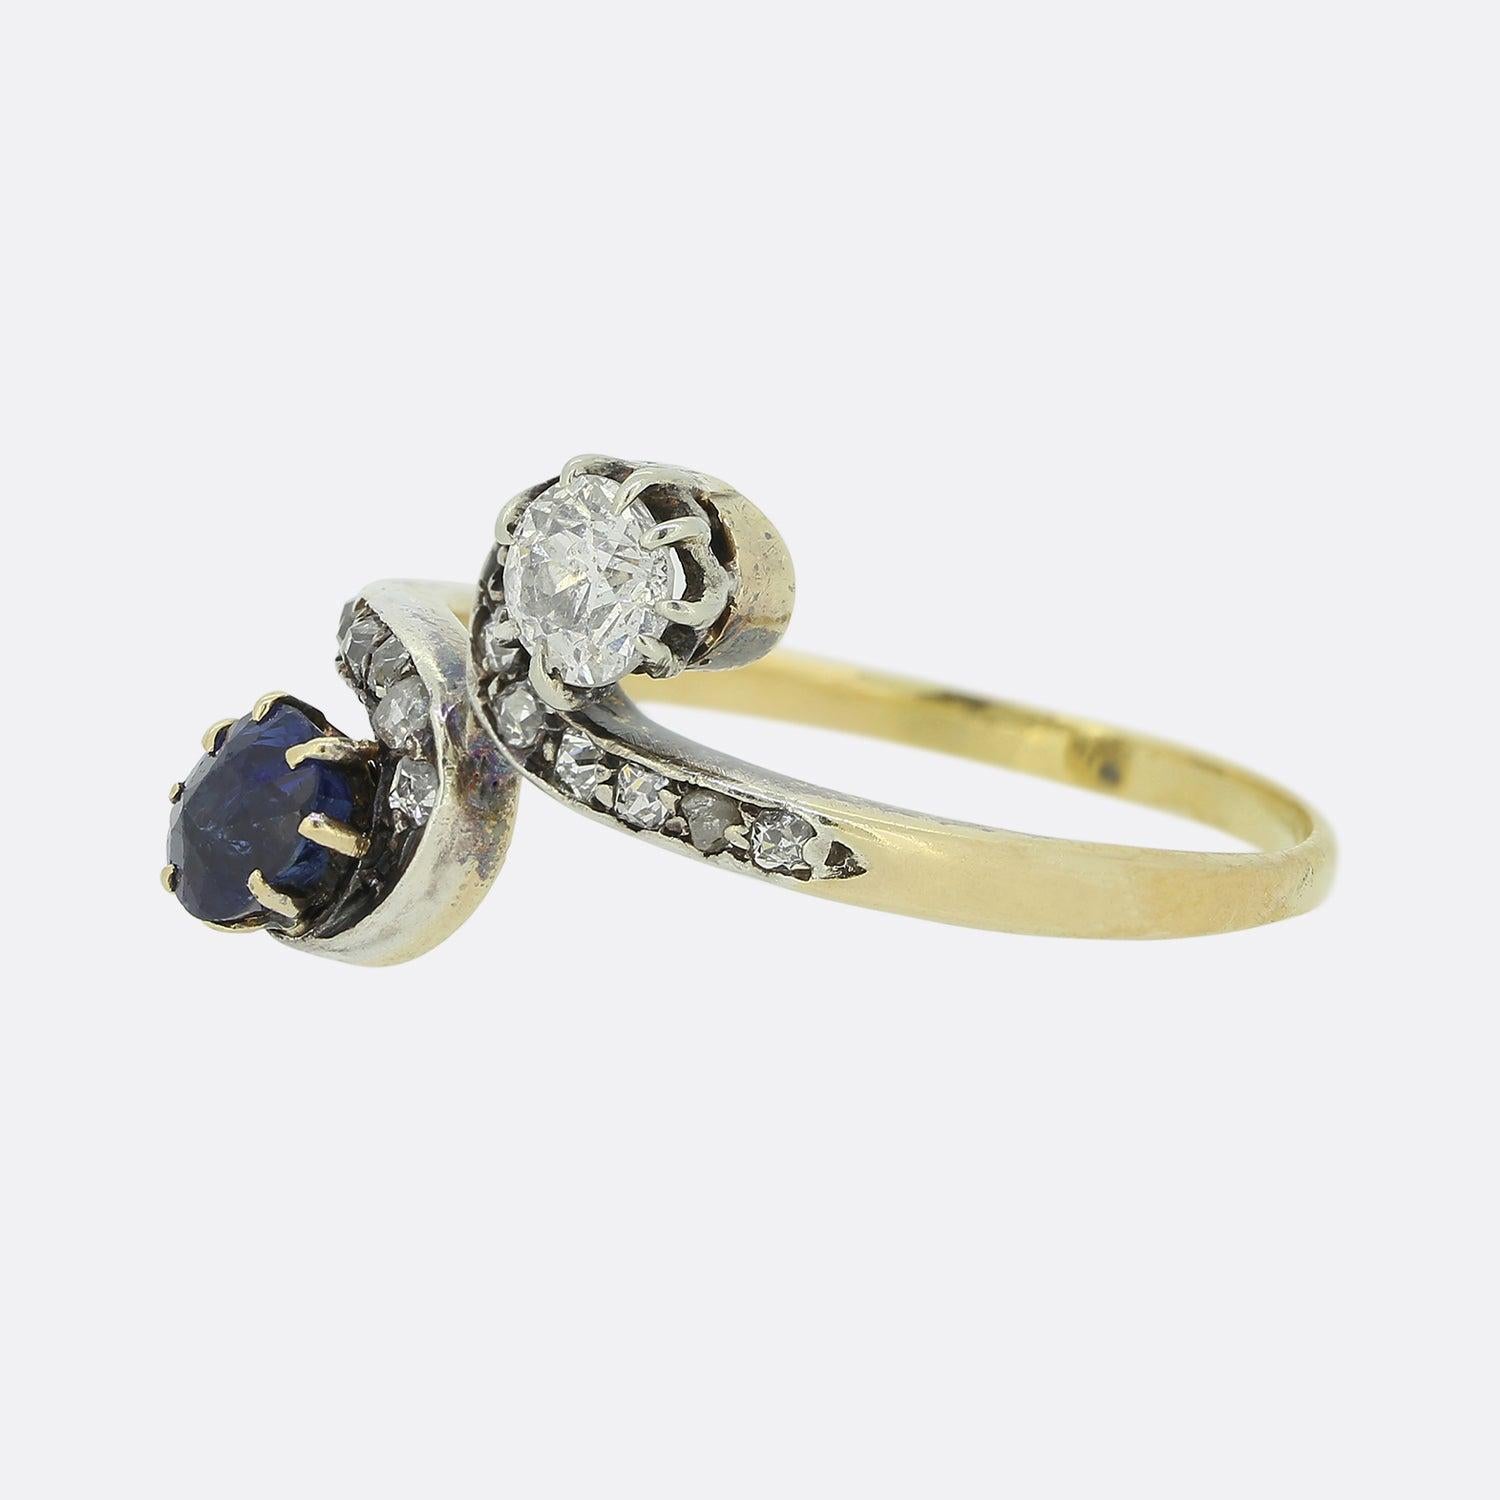 Dies ist ein 18ct Gelbgold Saphir und Diamant-Ring aus der Edwardianischen Ära. Der Ring besteht aus einem wunderschönen blauen Saphir und einem Diamanten im Altschliff in einer gedrehten Fassung aus 18 Karat Gelbgold und Platin mit diamantbesetzten